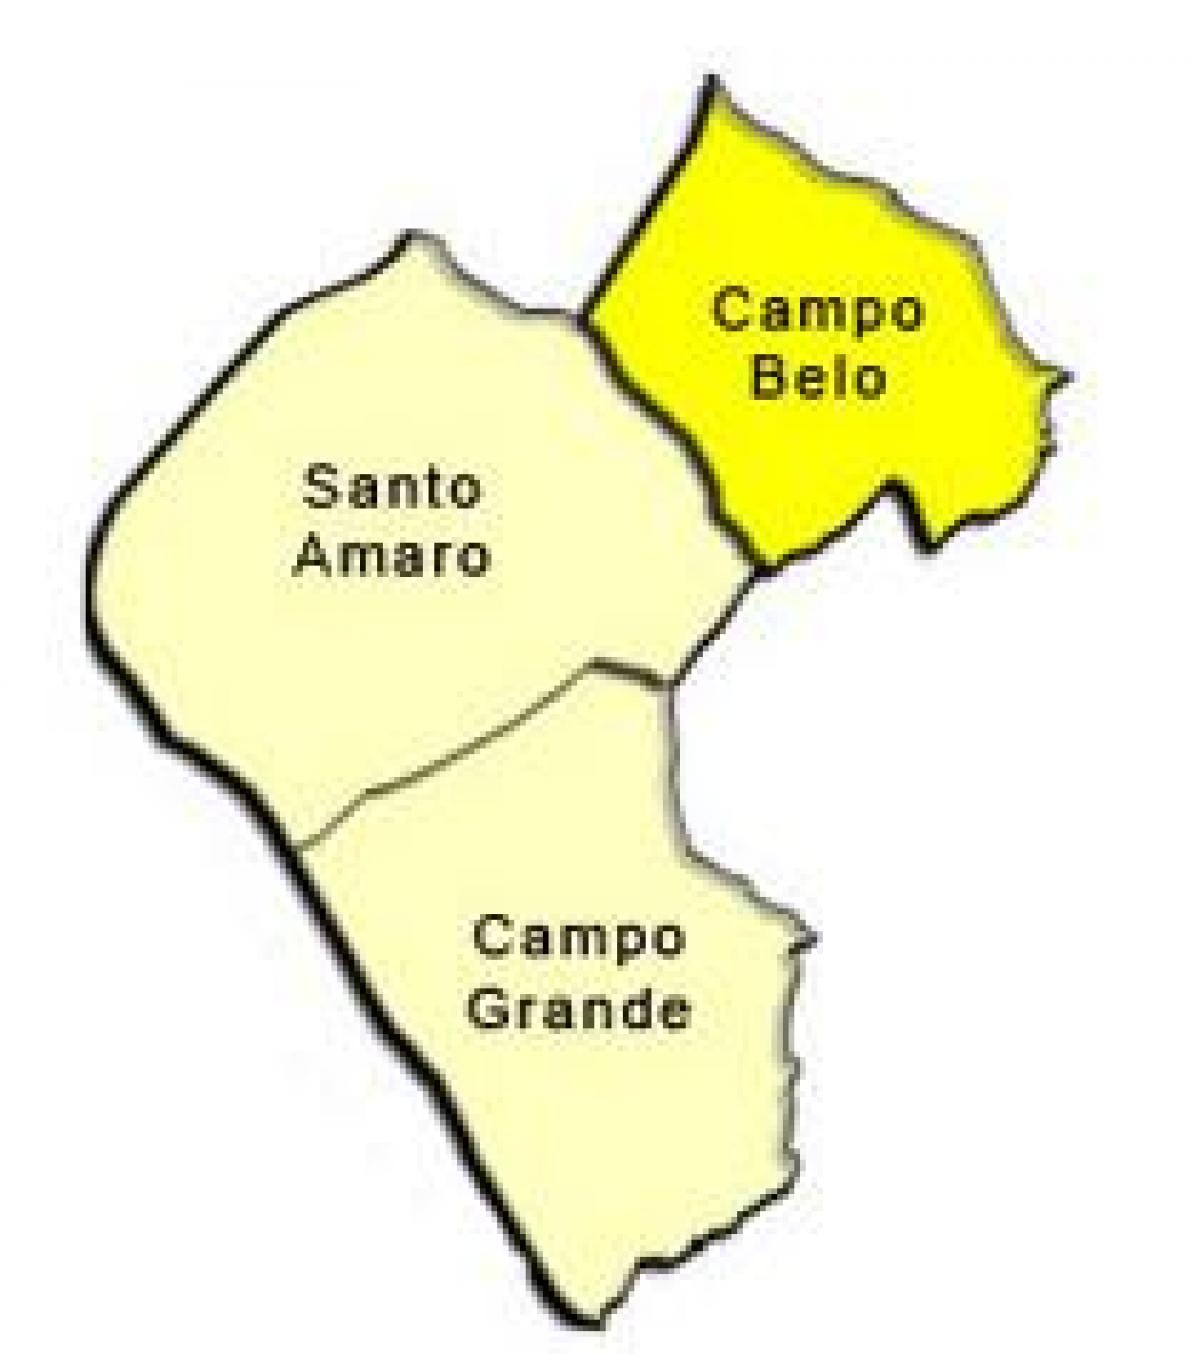 خريطة سانتو امارو الفرعية.